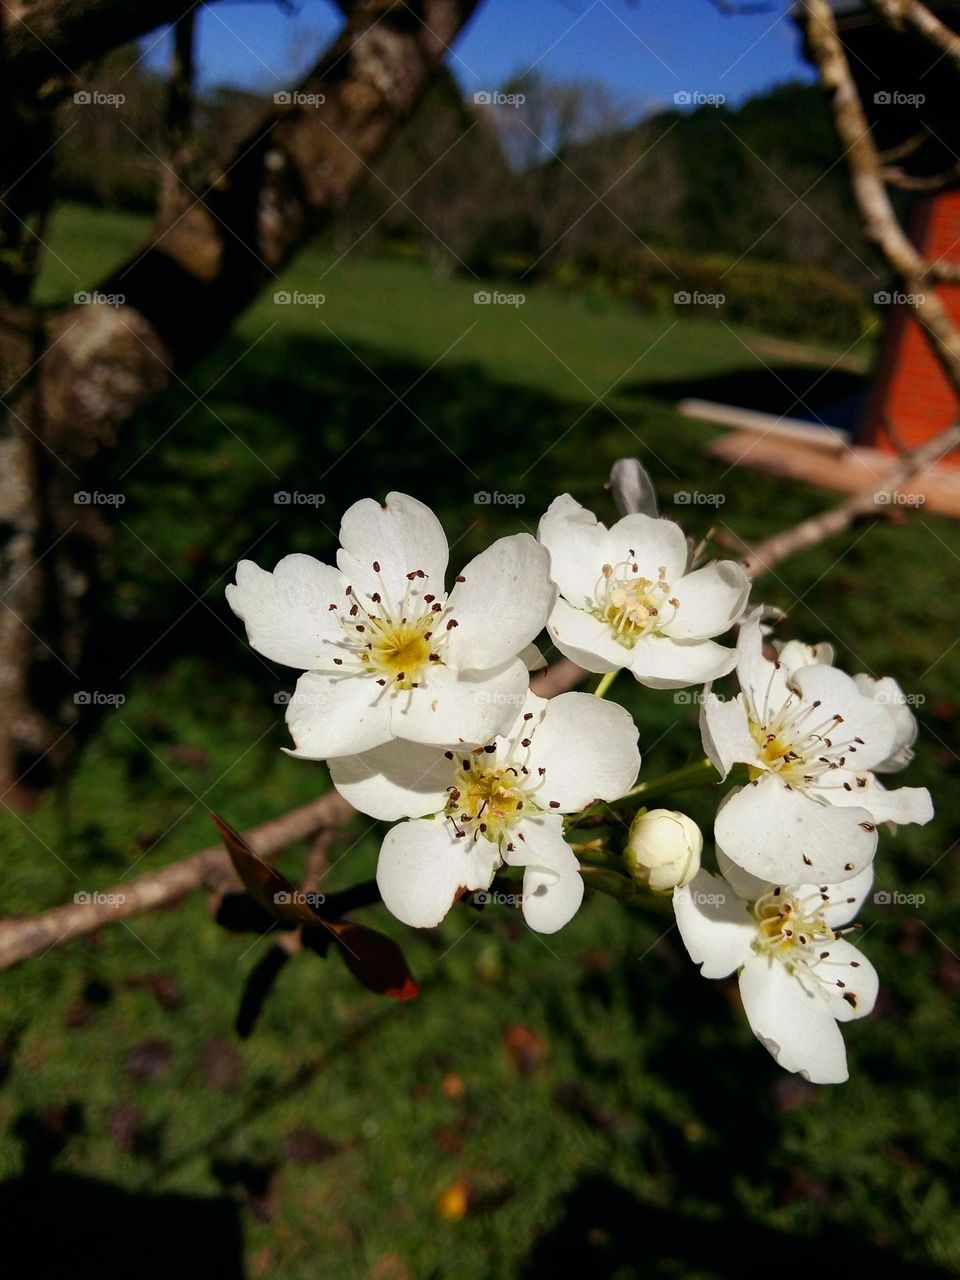 Vocês sabiam que essas flores brancas lindas são flores do pé de Pera ?
As flores abrem-se junto com as folhas, são brancas, raramente róseas. Ela é constituída por cinco sépalas, cinco pétalas, de 20 a 30 estames com anteras vermelhas.